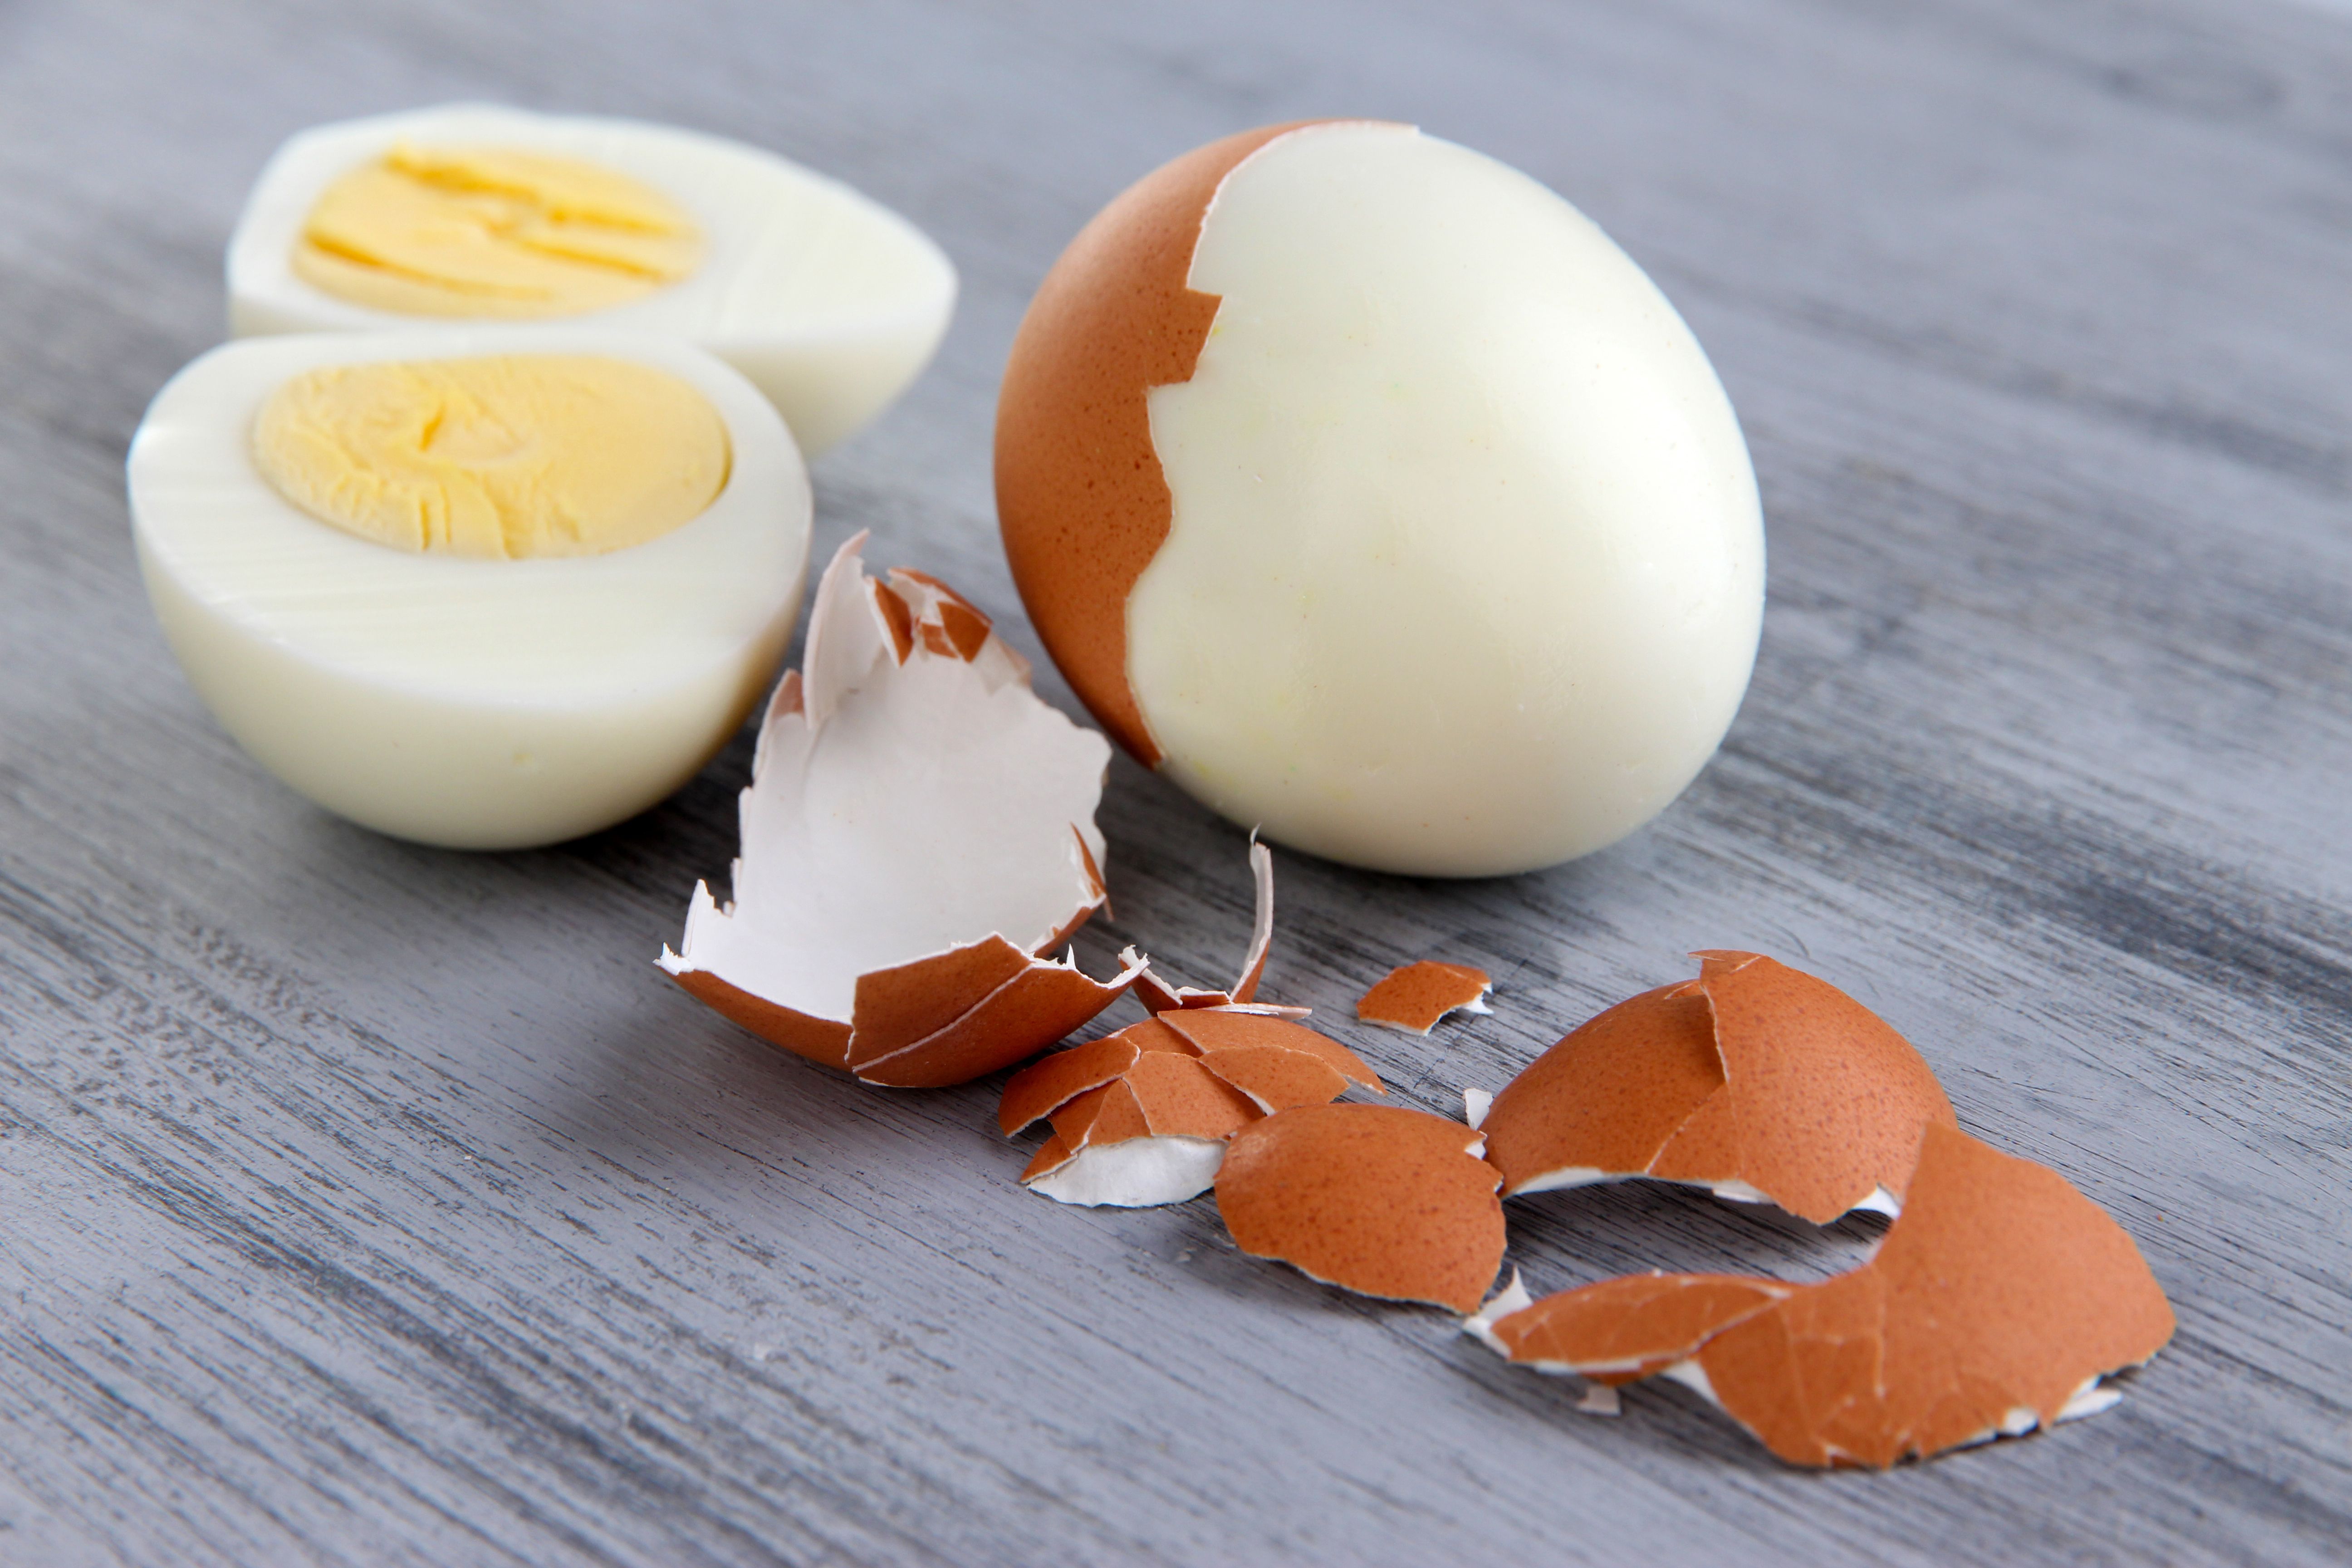 L'œuf dur est la façon optimale de consommer l'œuf ! » Vrai ou